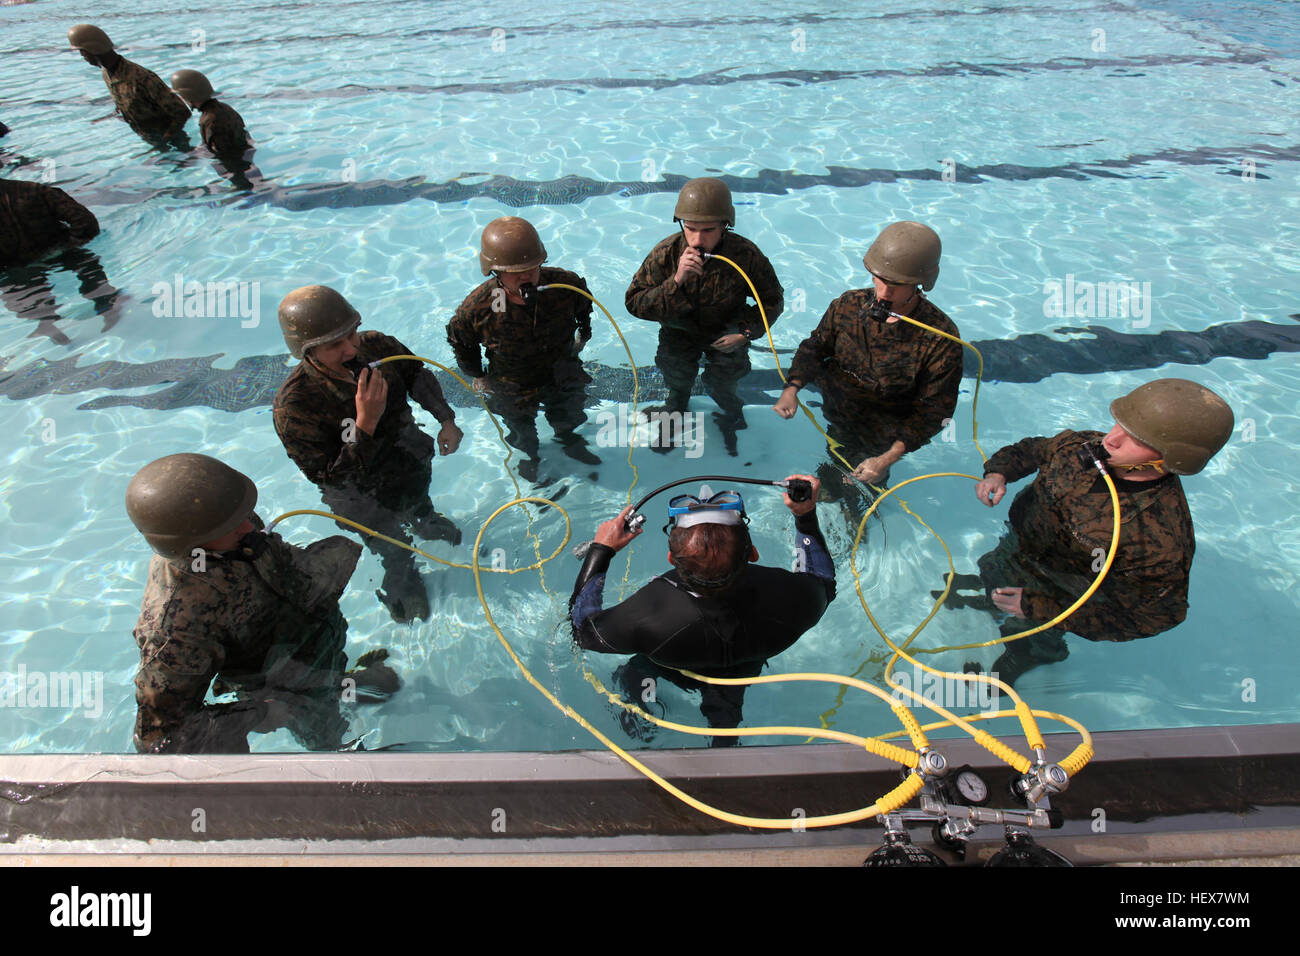 MARINE CORPS BASE CAMP PENDLETON, en Californie - Marines avec 13e Marine Expeditionary Unit, Élément de commandement, d'apprendre à respirer à partir d'un équipage d'hélicoptère de l'appareil respiratoire lors de l'évacuation amphibie modulaire cours formateur à bord Marine Corps Base Camp Pendleton, 25 janvier. La DBC Marine donner des bouteilles d'air respirable de minutes en cas d'être submergés sous l'eau à l'intérieur d'un hélicoptère. (Official U.S. Marine Corps photo par le Cpl. Christopher O'Quin)(publié) 13e MEU Marines mener la formation de survie en eau DVIDS362737 Banque D'Images